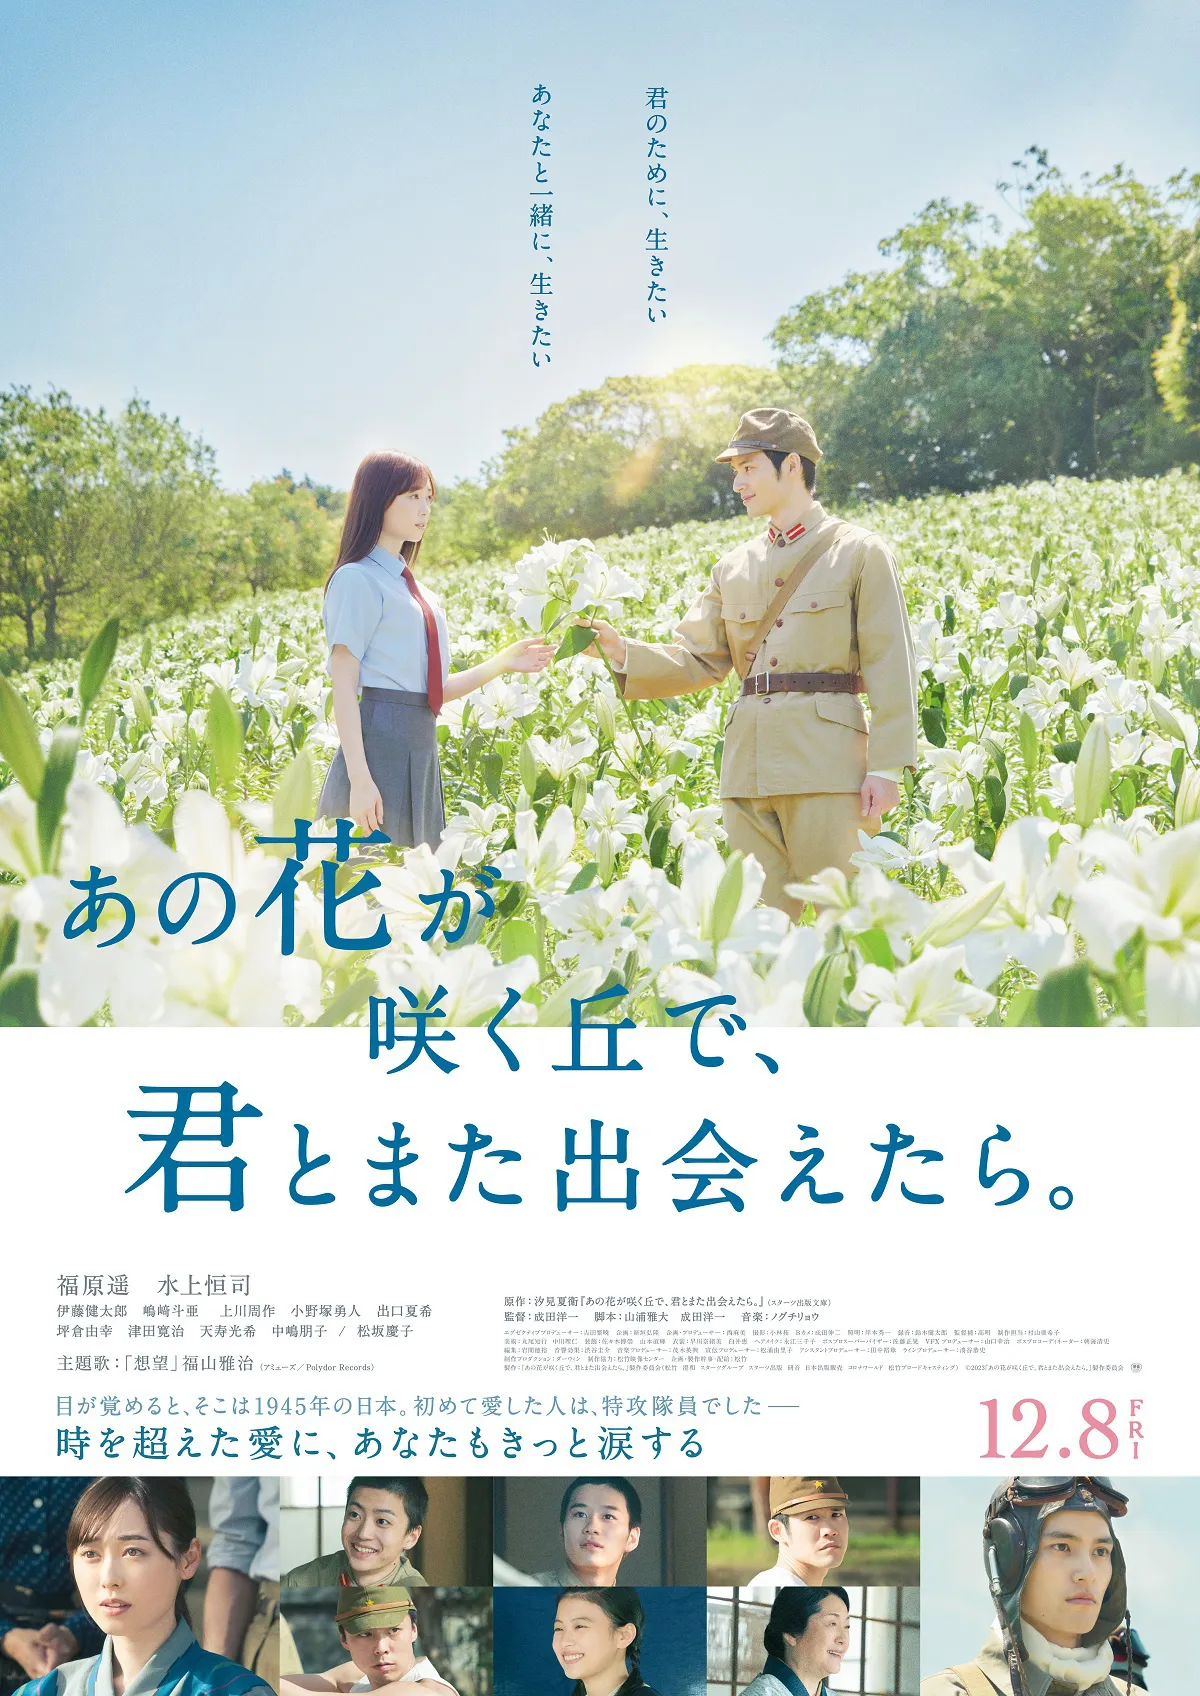 映画「あの花が咲く丘で、君とまた出会えたら。」は12月8日(金)公開